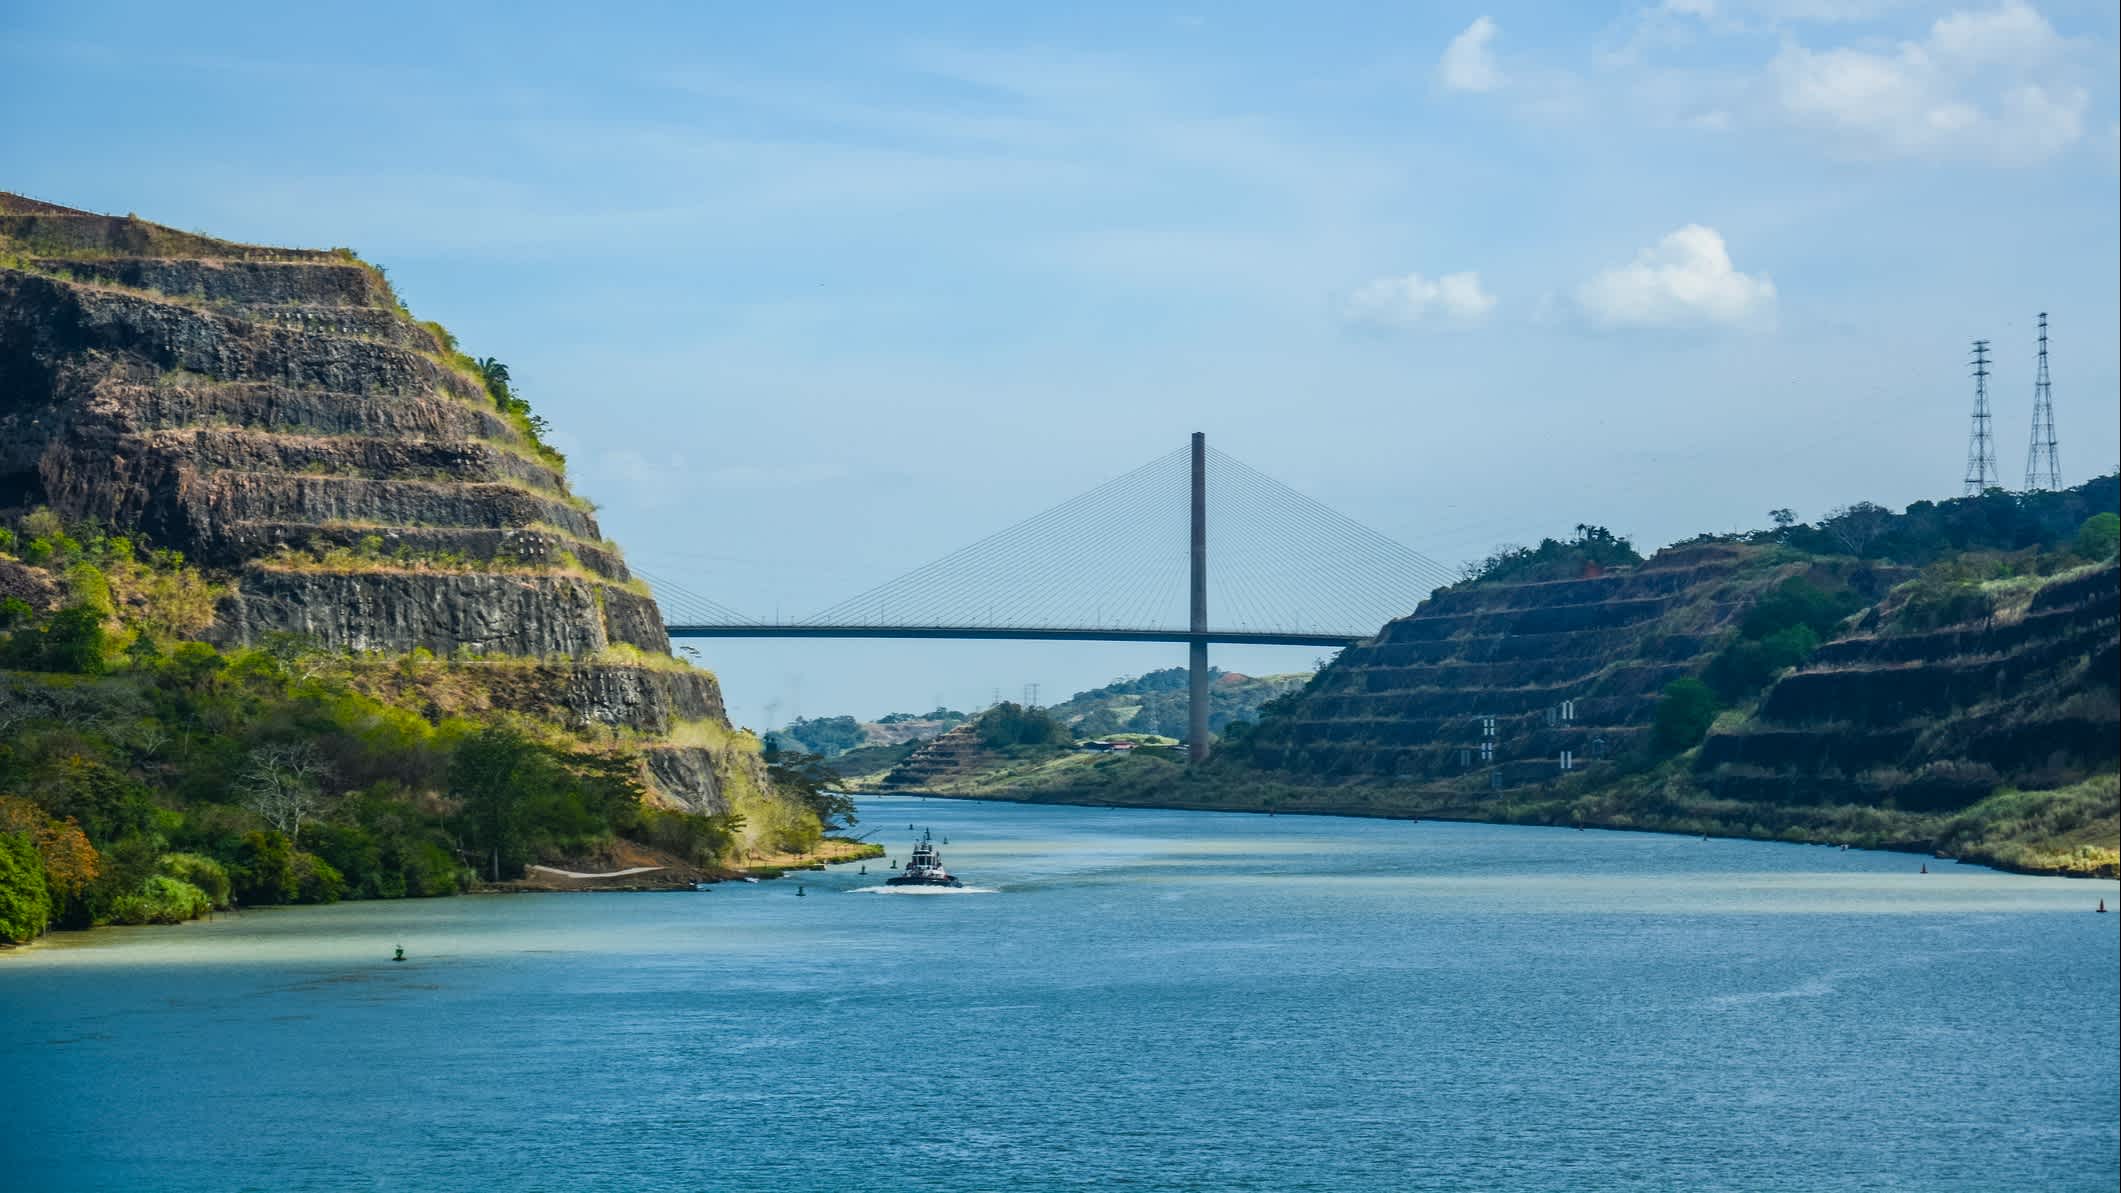 Panamakanal mit Brücke im Hintergrund